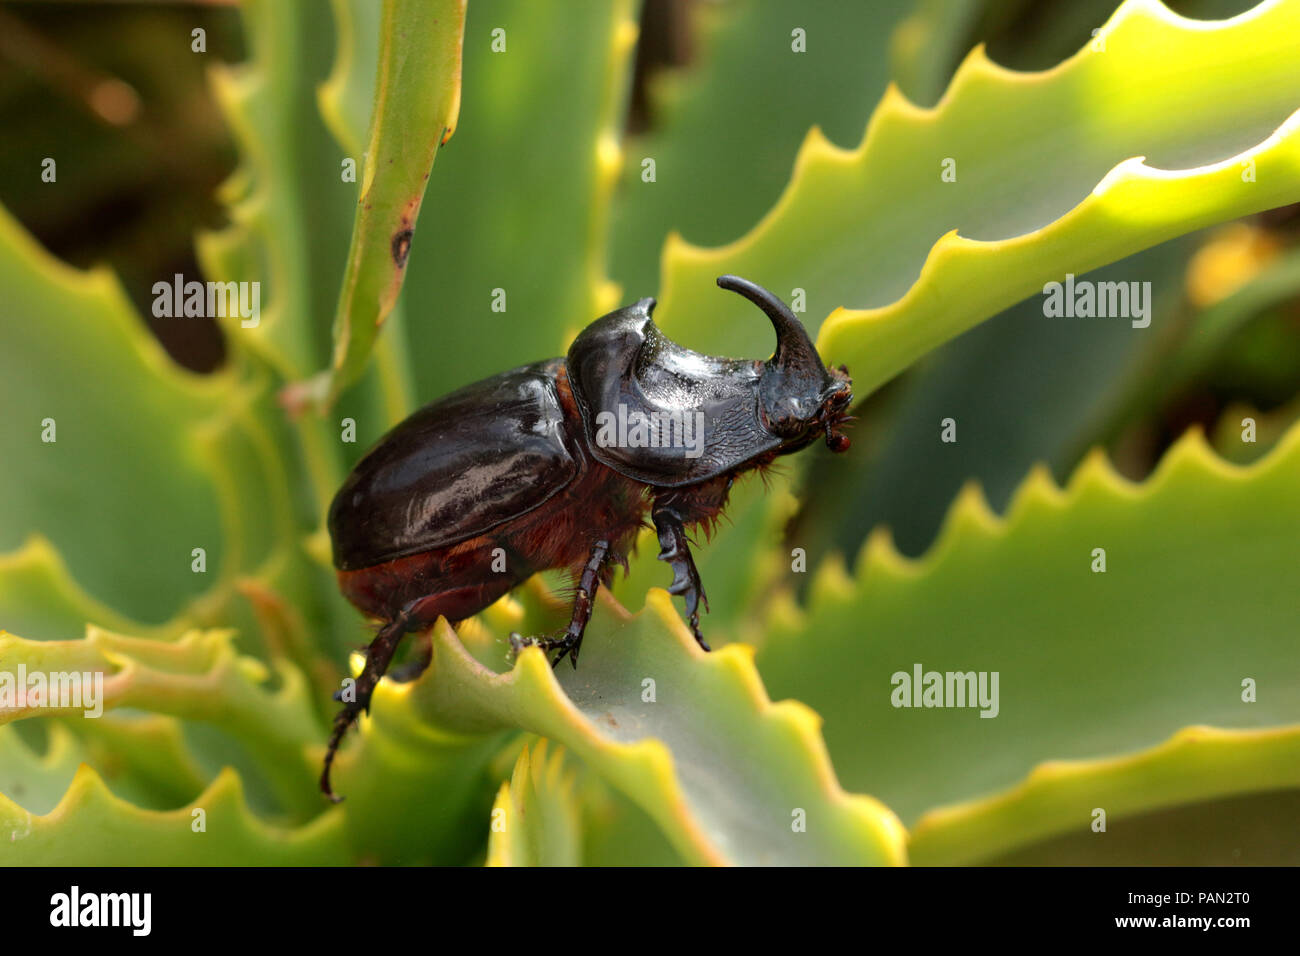 Du scarabée rhinocéros Oryctes, nasiconis, marchant sur une plante verte Banque D'Images